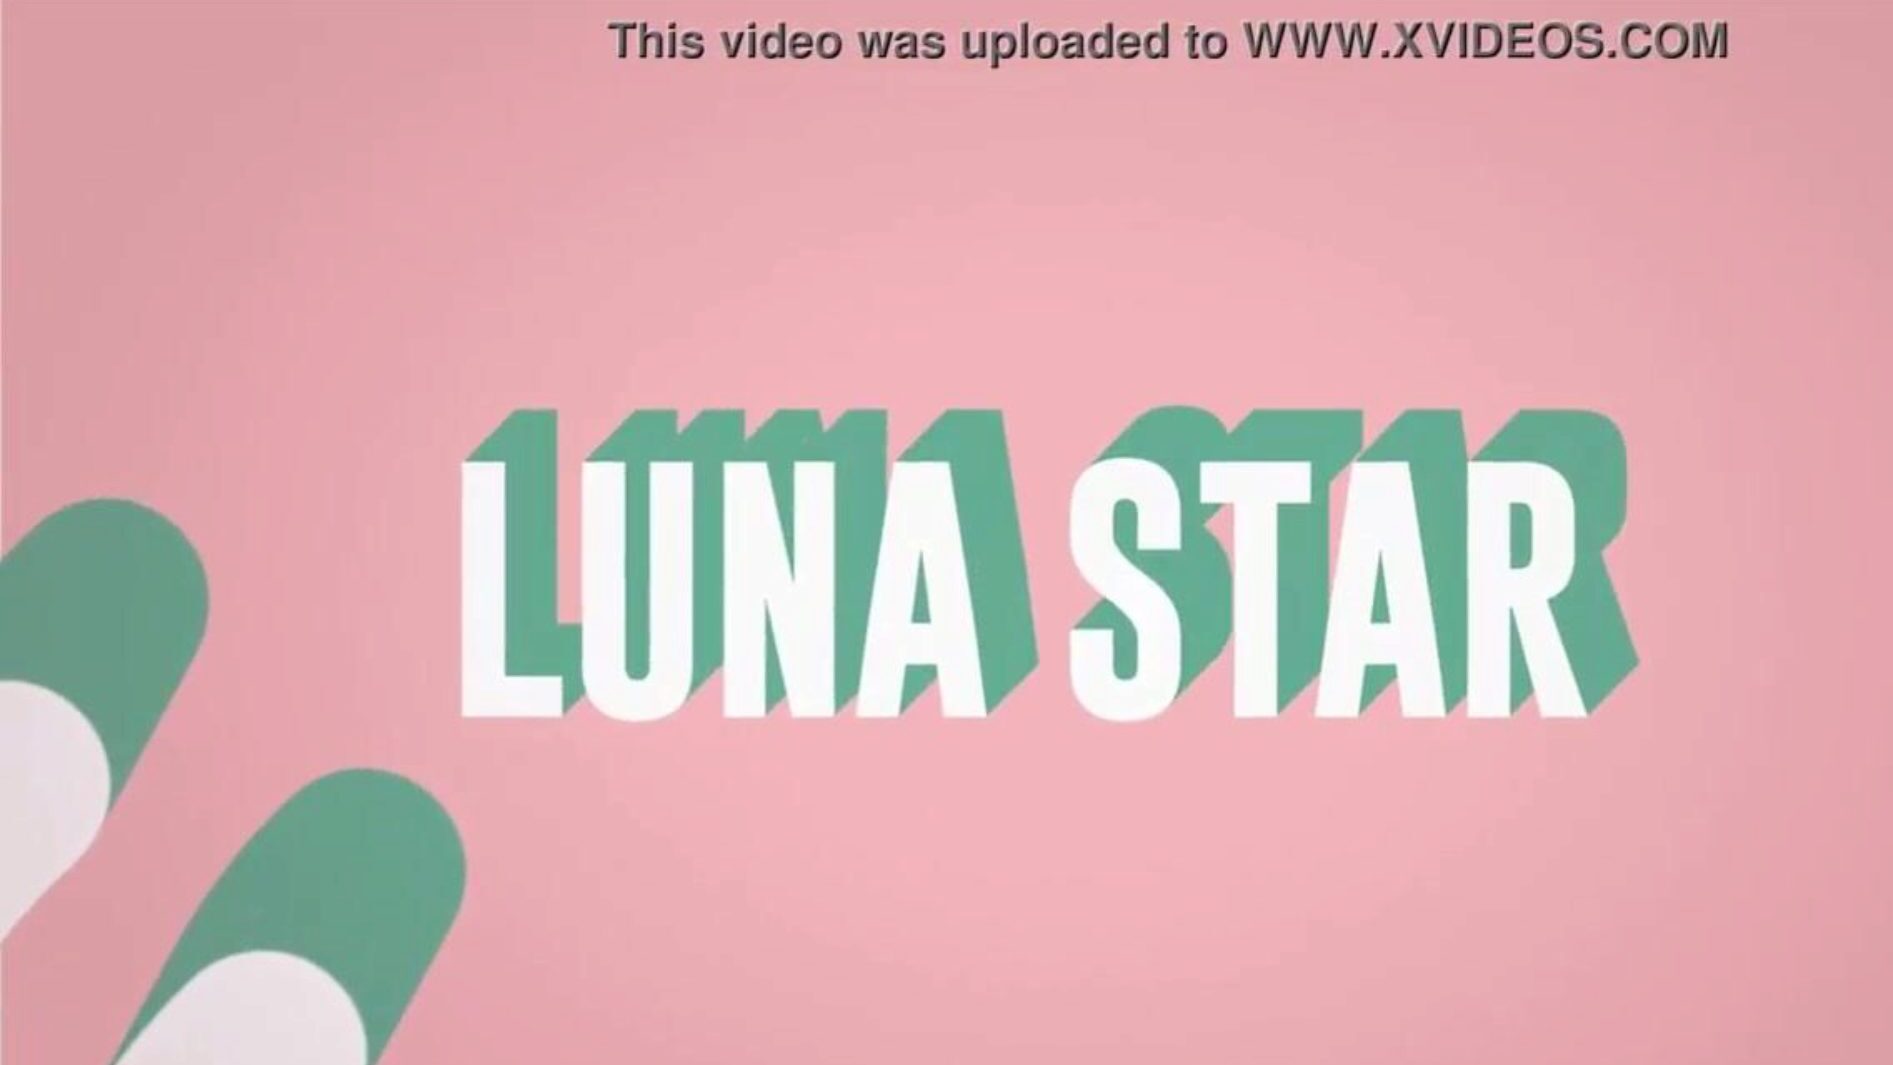 这是我他妈的wifi：用露娜的明星来吹牛演出;参见www.zzfull.com/luna